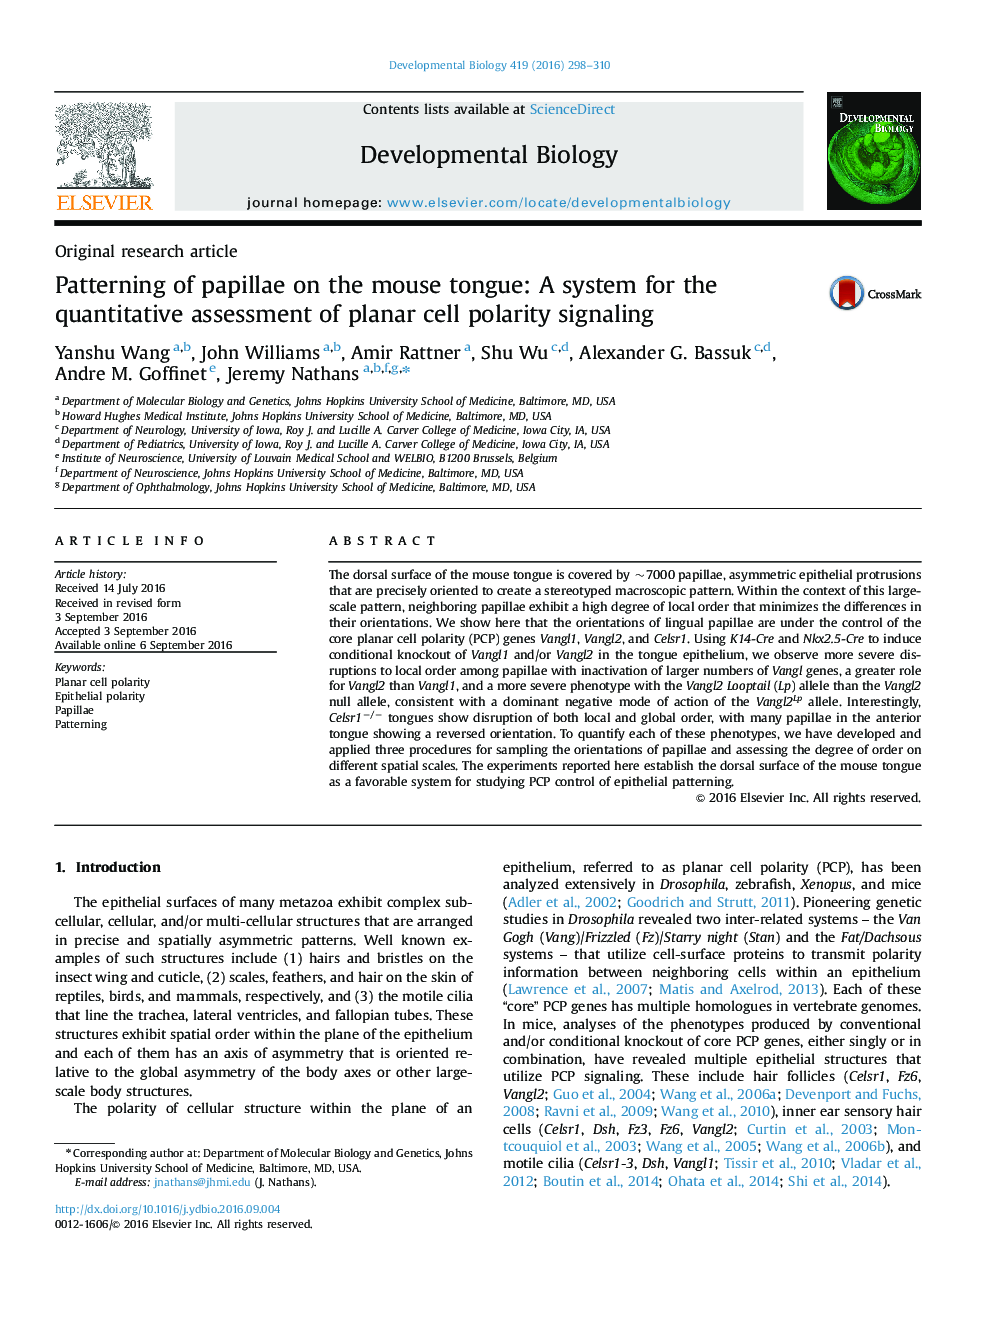 مقاله پژوهشی اصلی در مورد پاپیلاها در زبان ماوس: یک سیستم برای ارزیابی کمی سیگنال قطبی سلولی مسطح 